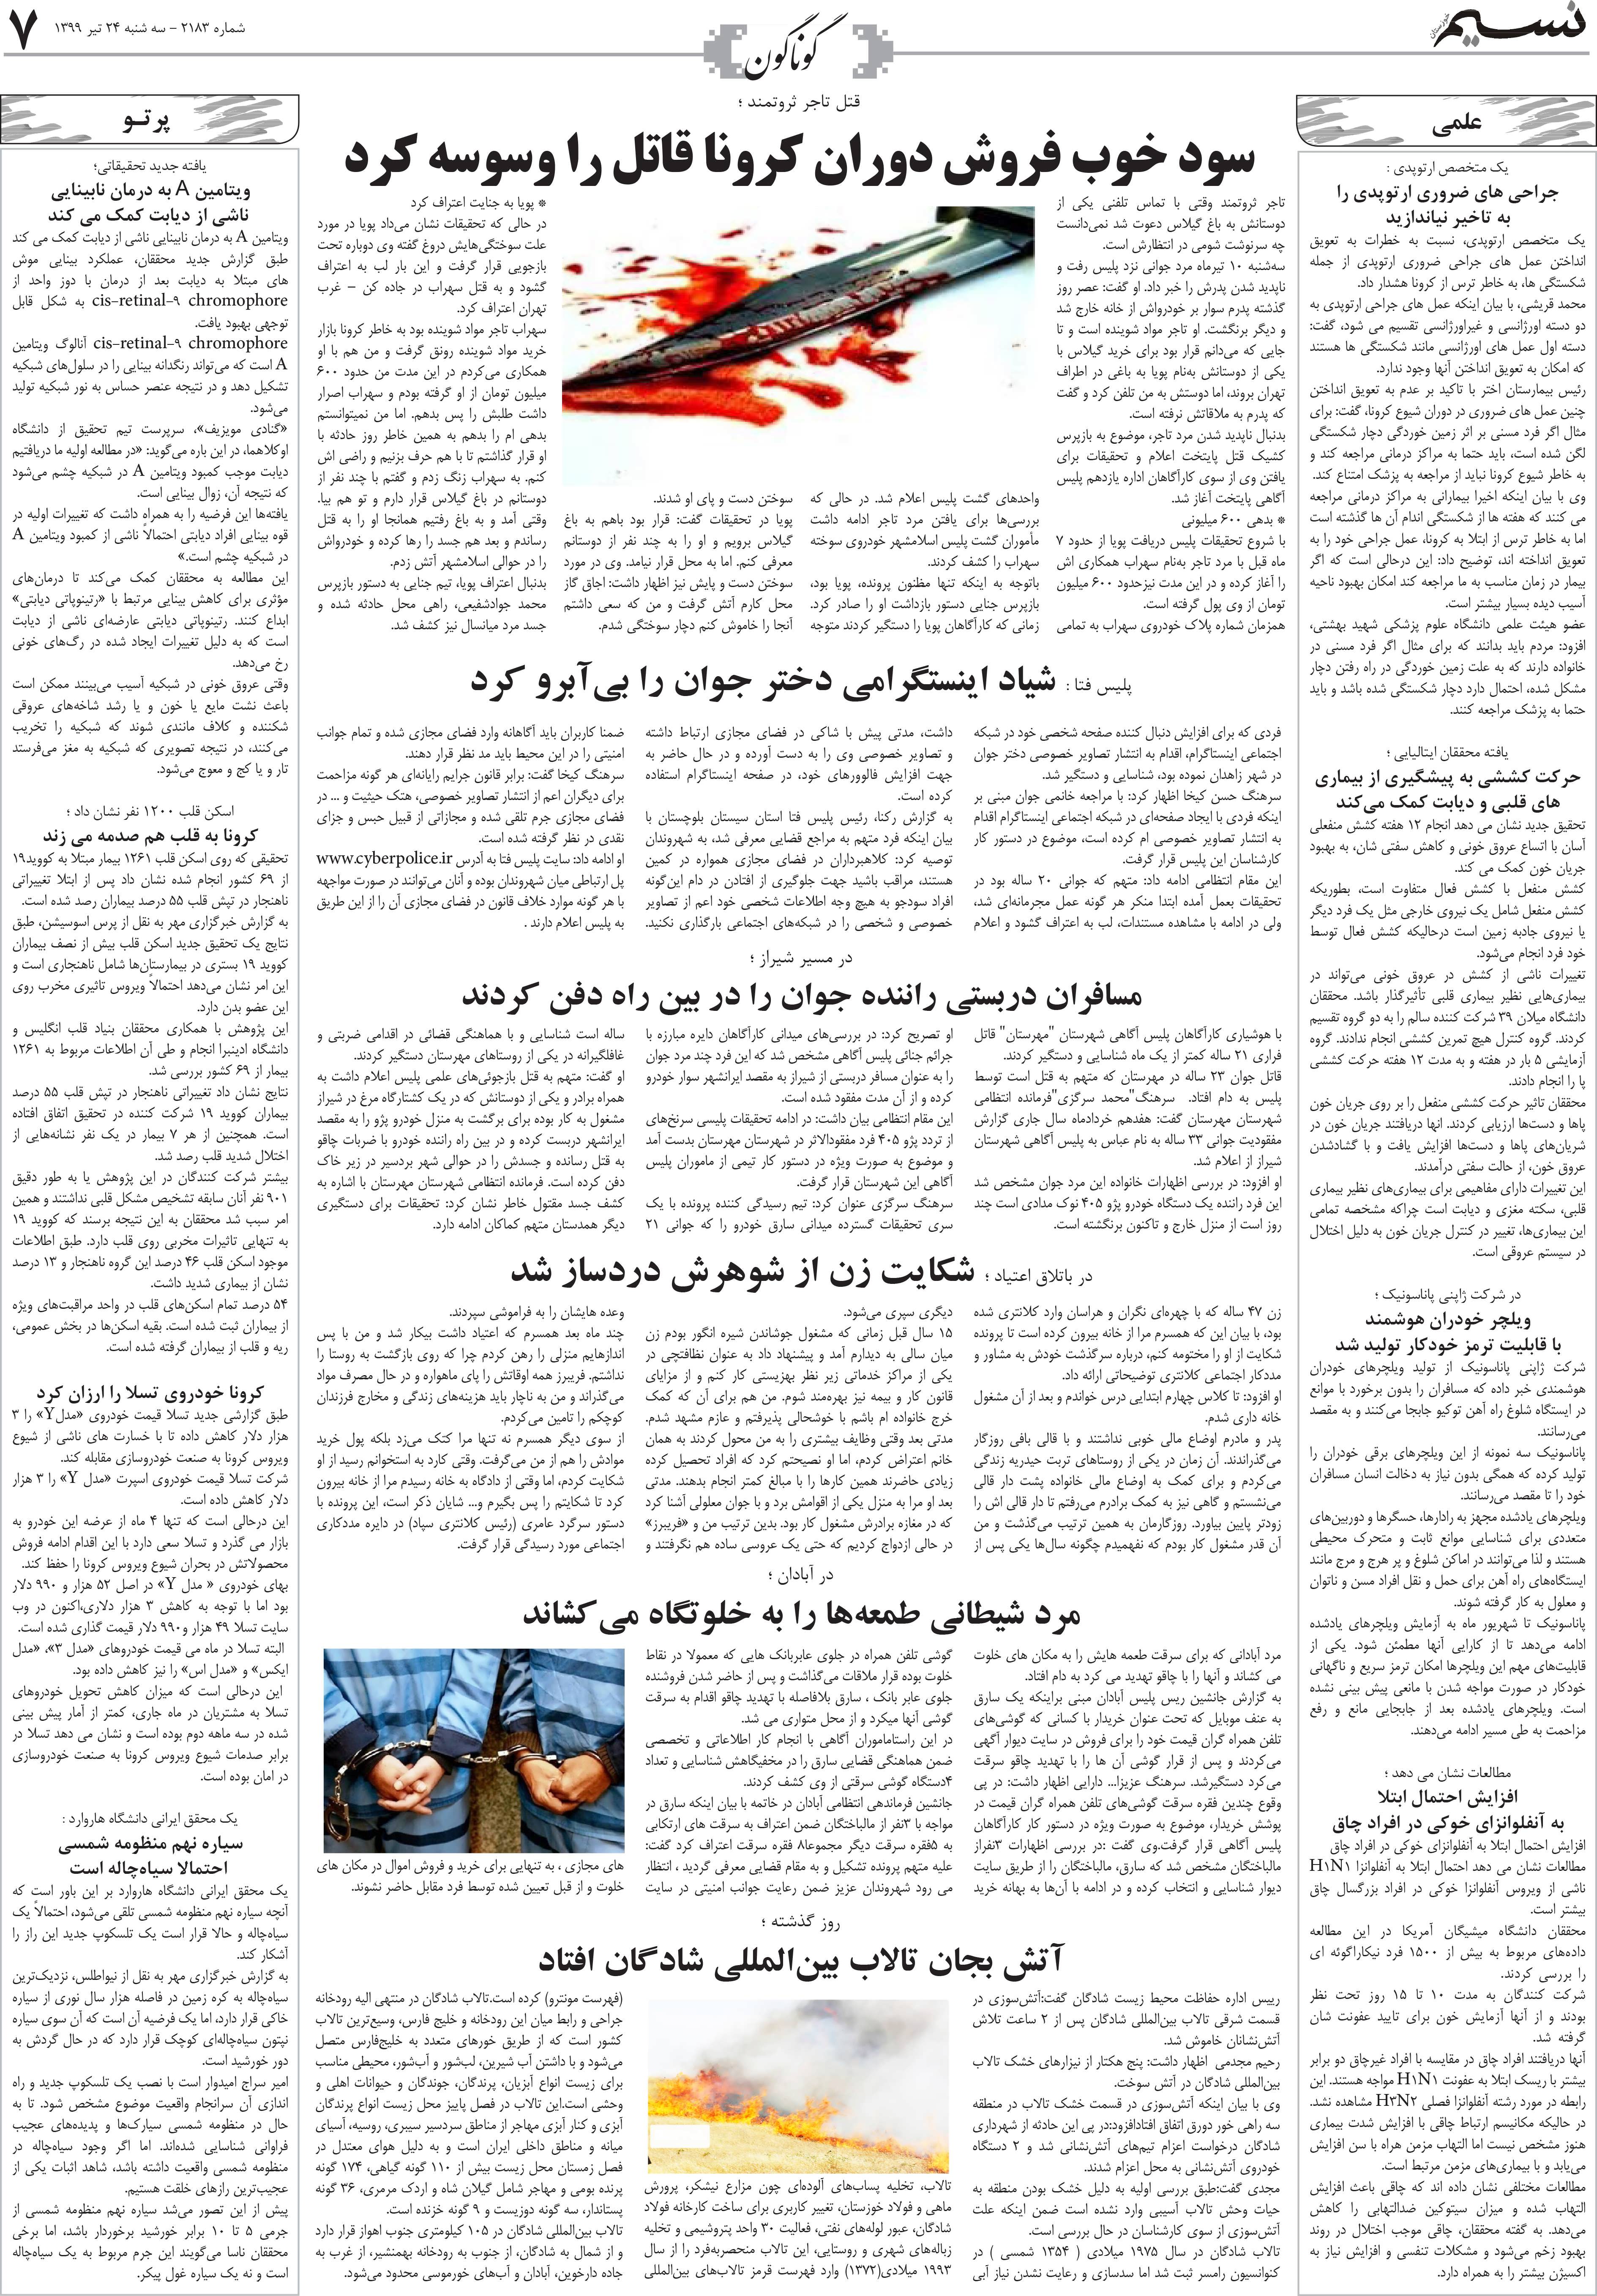 صفحه گوناگون روزنامه نسیم شماره 2183